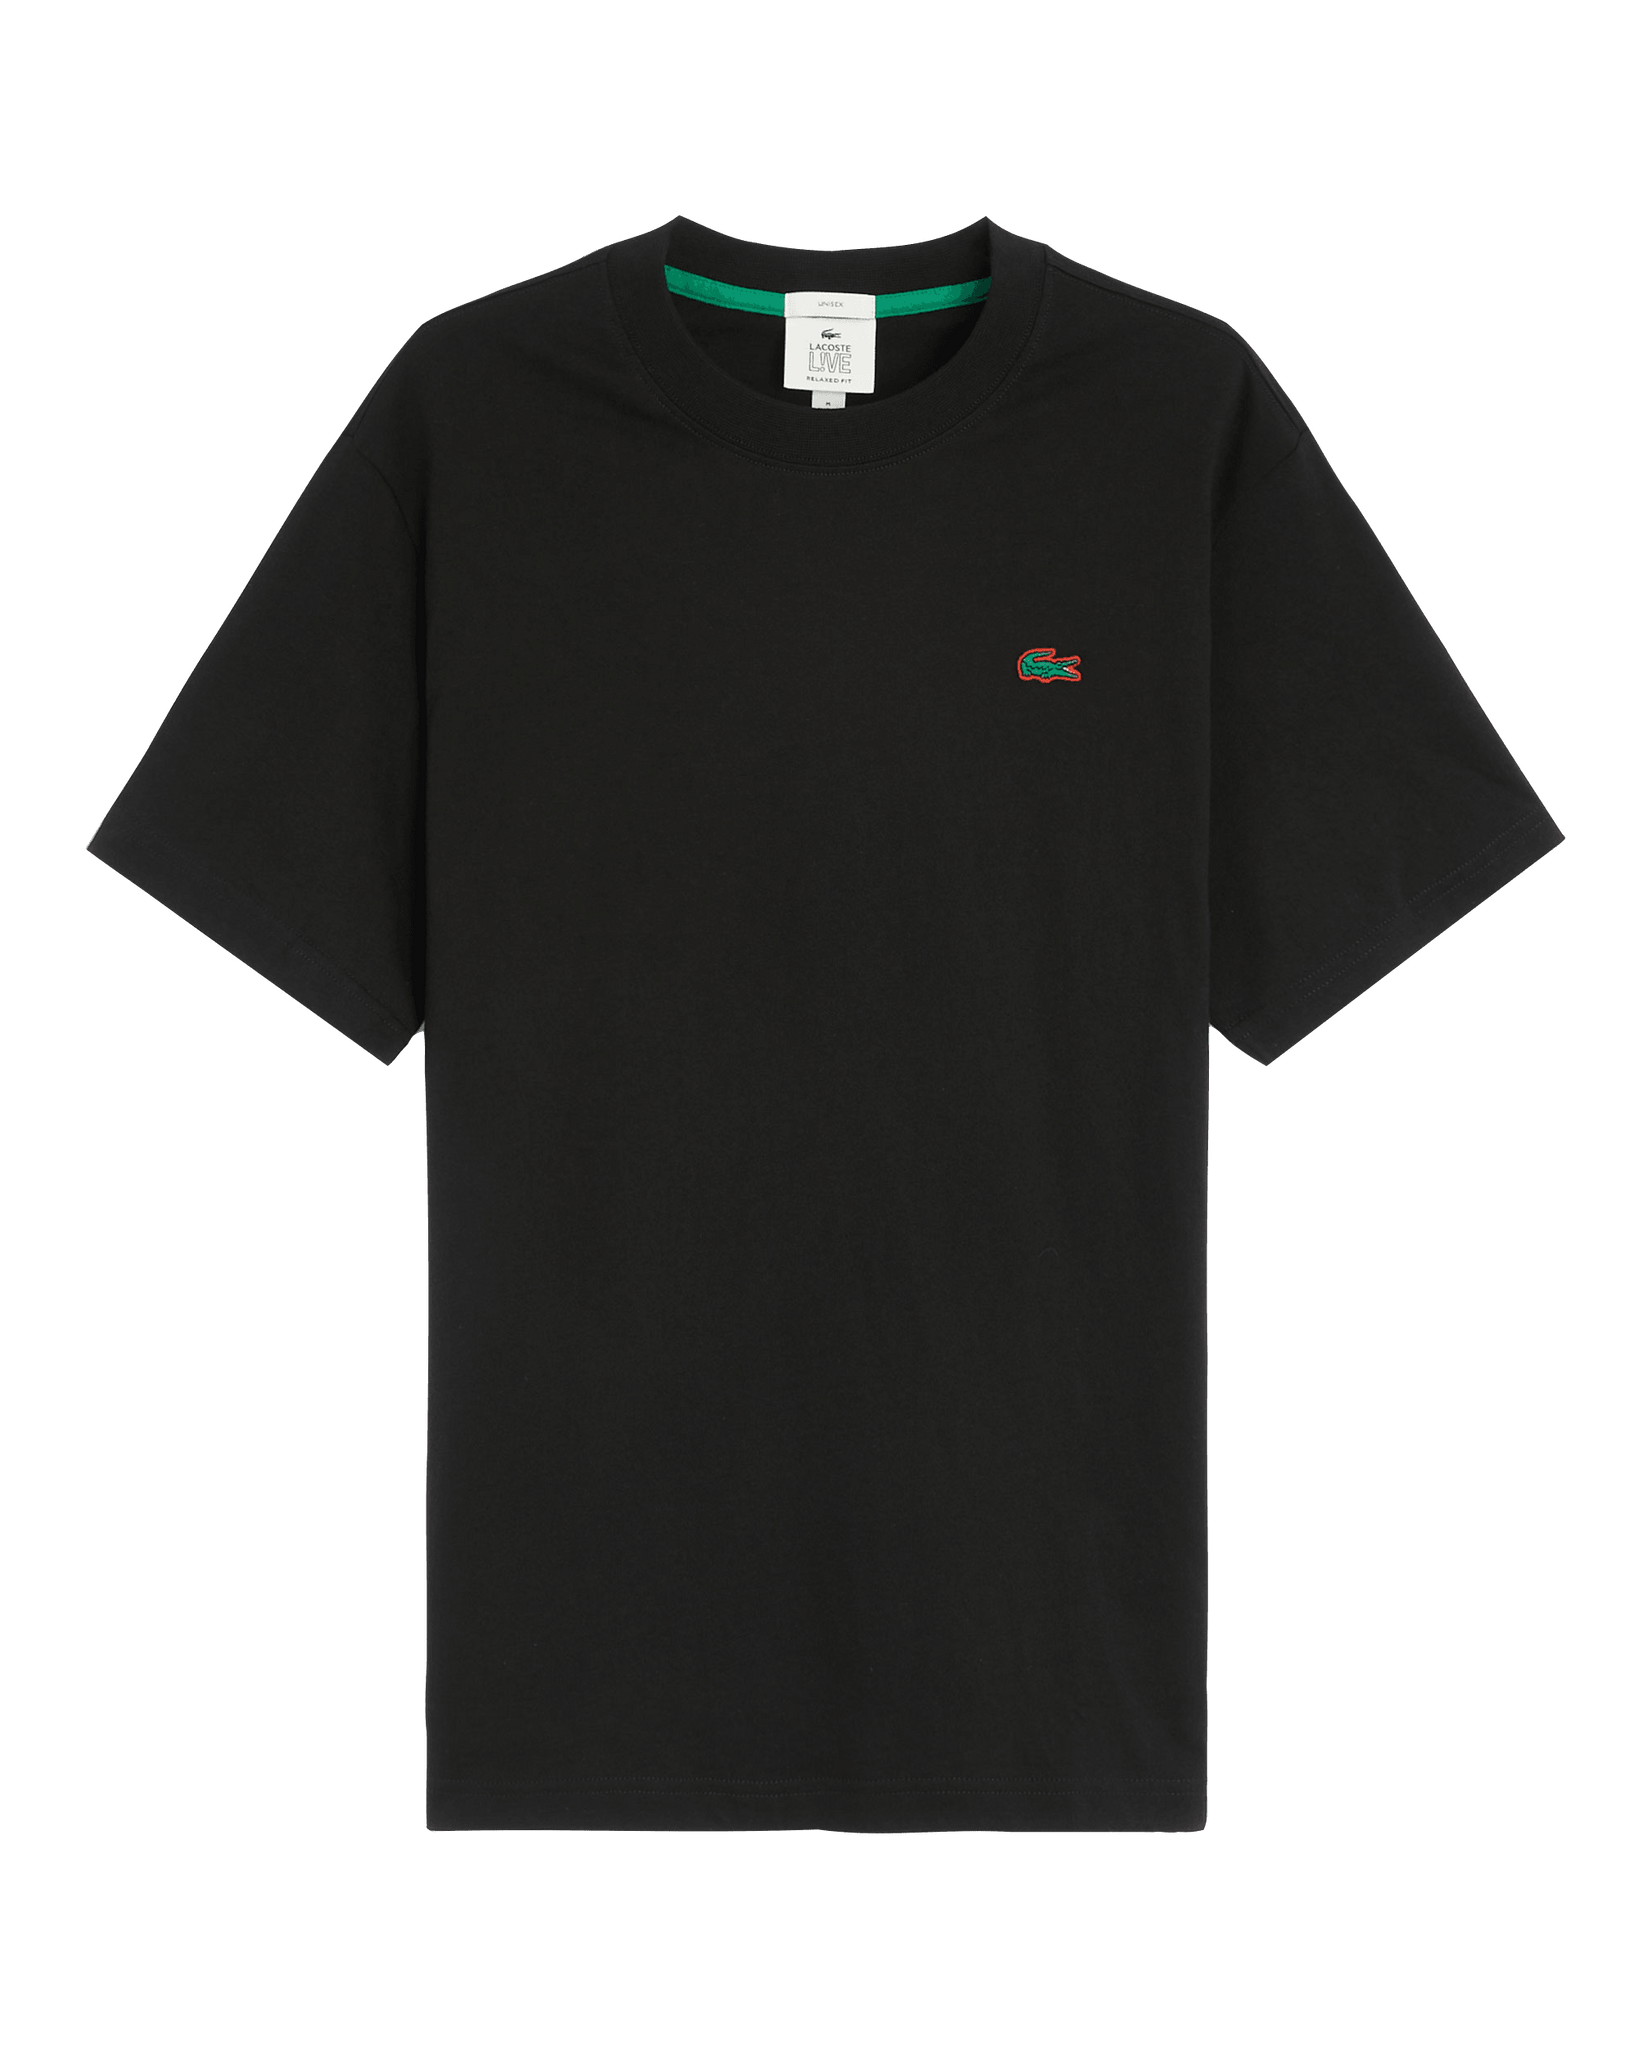 Camiseta unisex Lacoste L!VE en algodón - ECRU